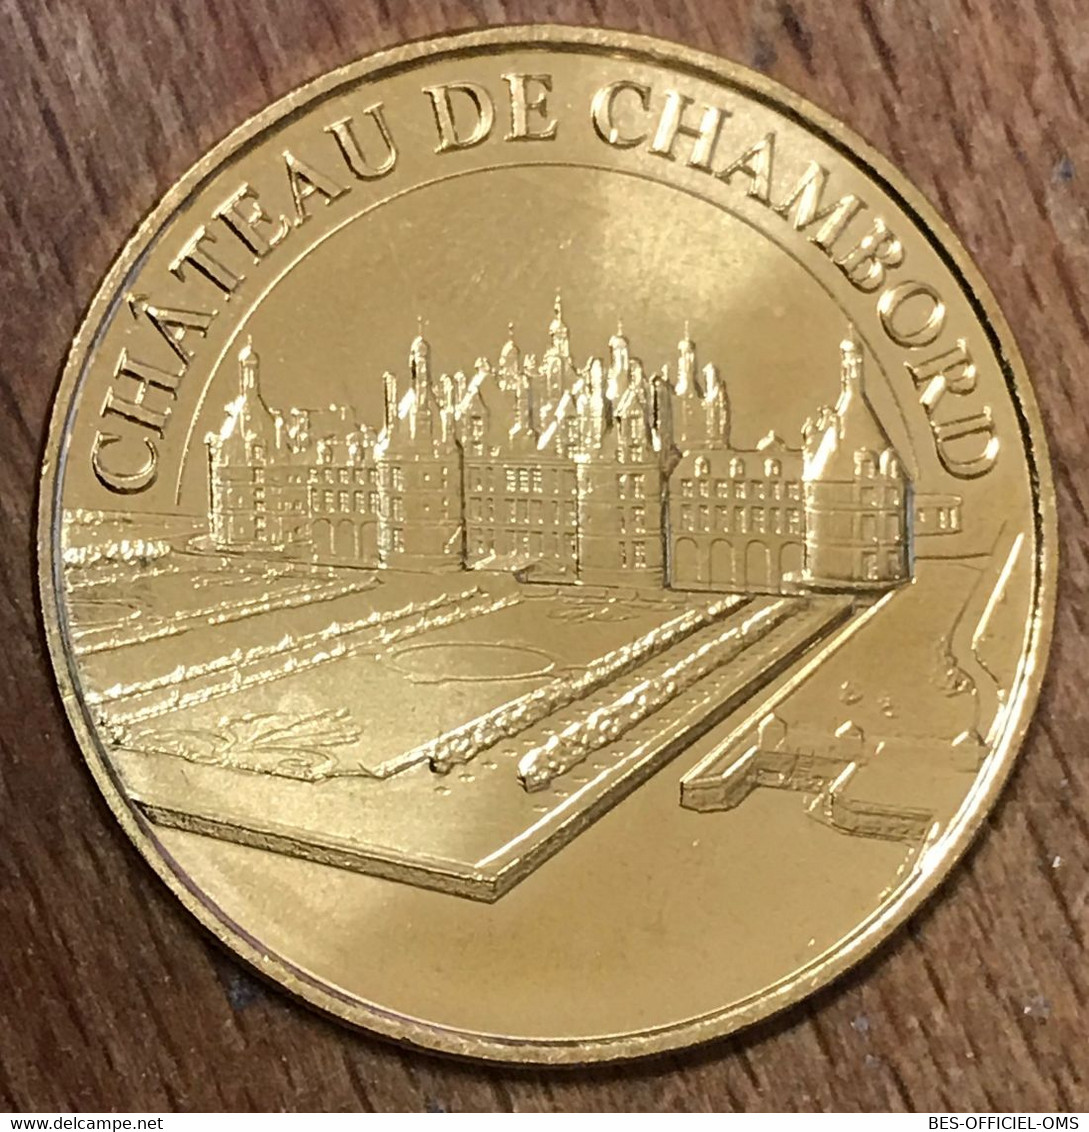 41 CHÂTEAU DE CHAMBORD MDP 2019 MINI MÉDAILLE SOUVENIR MONNAIE DE PARIS JETON TOURISTIQUE MEDALS COINS TOKENS - 2019